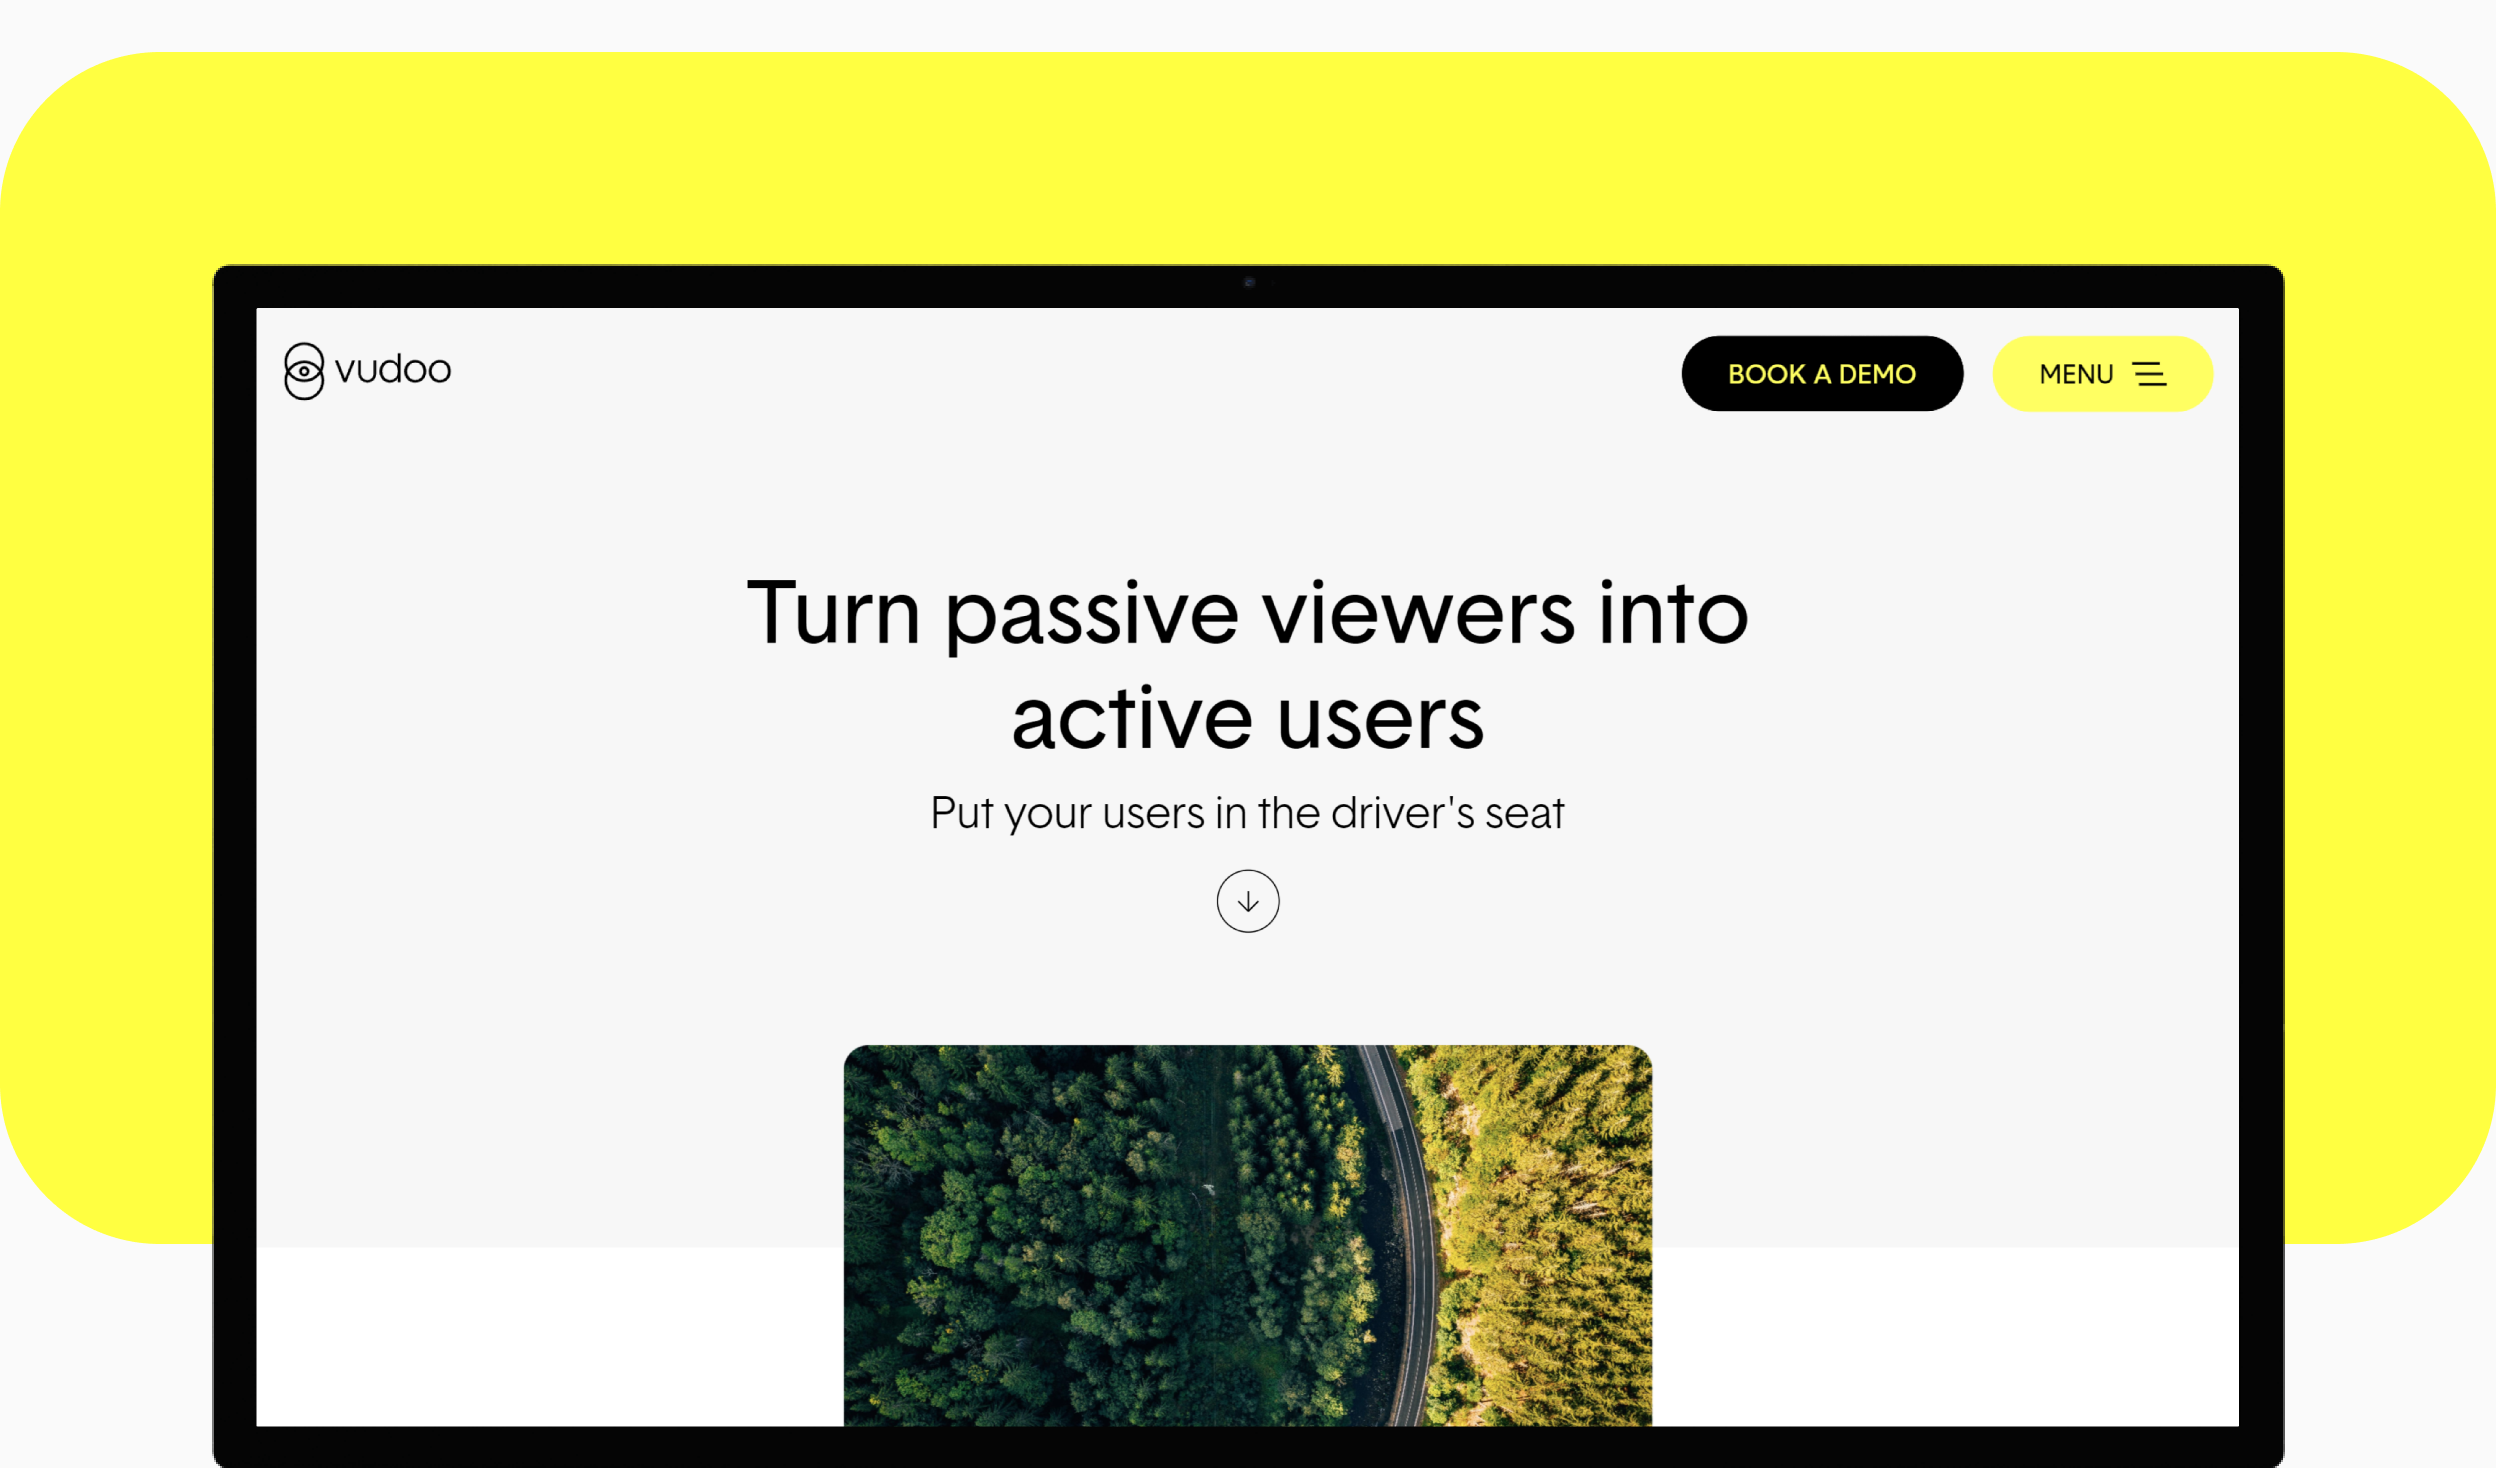 Vudoo website on a desktop screen against a yellow background